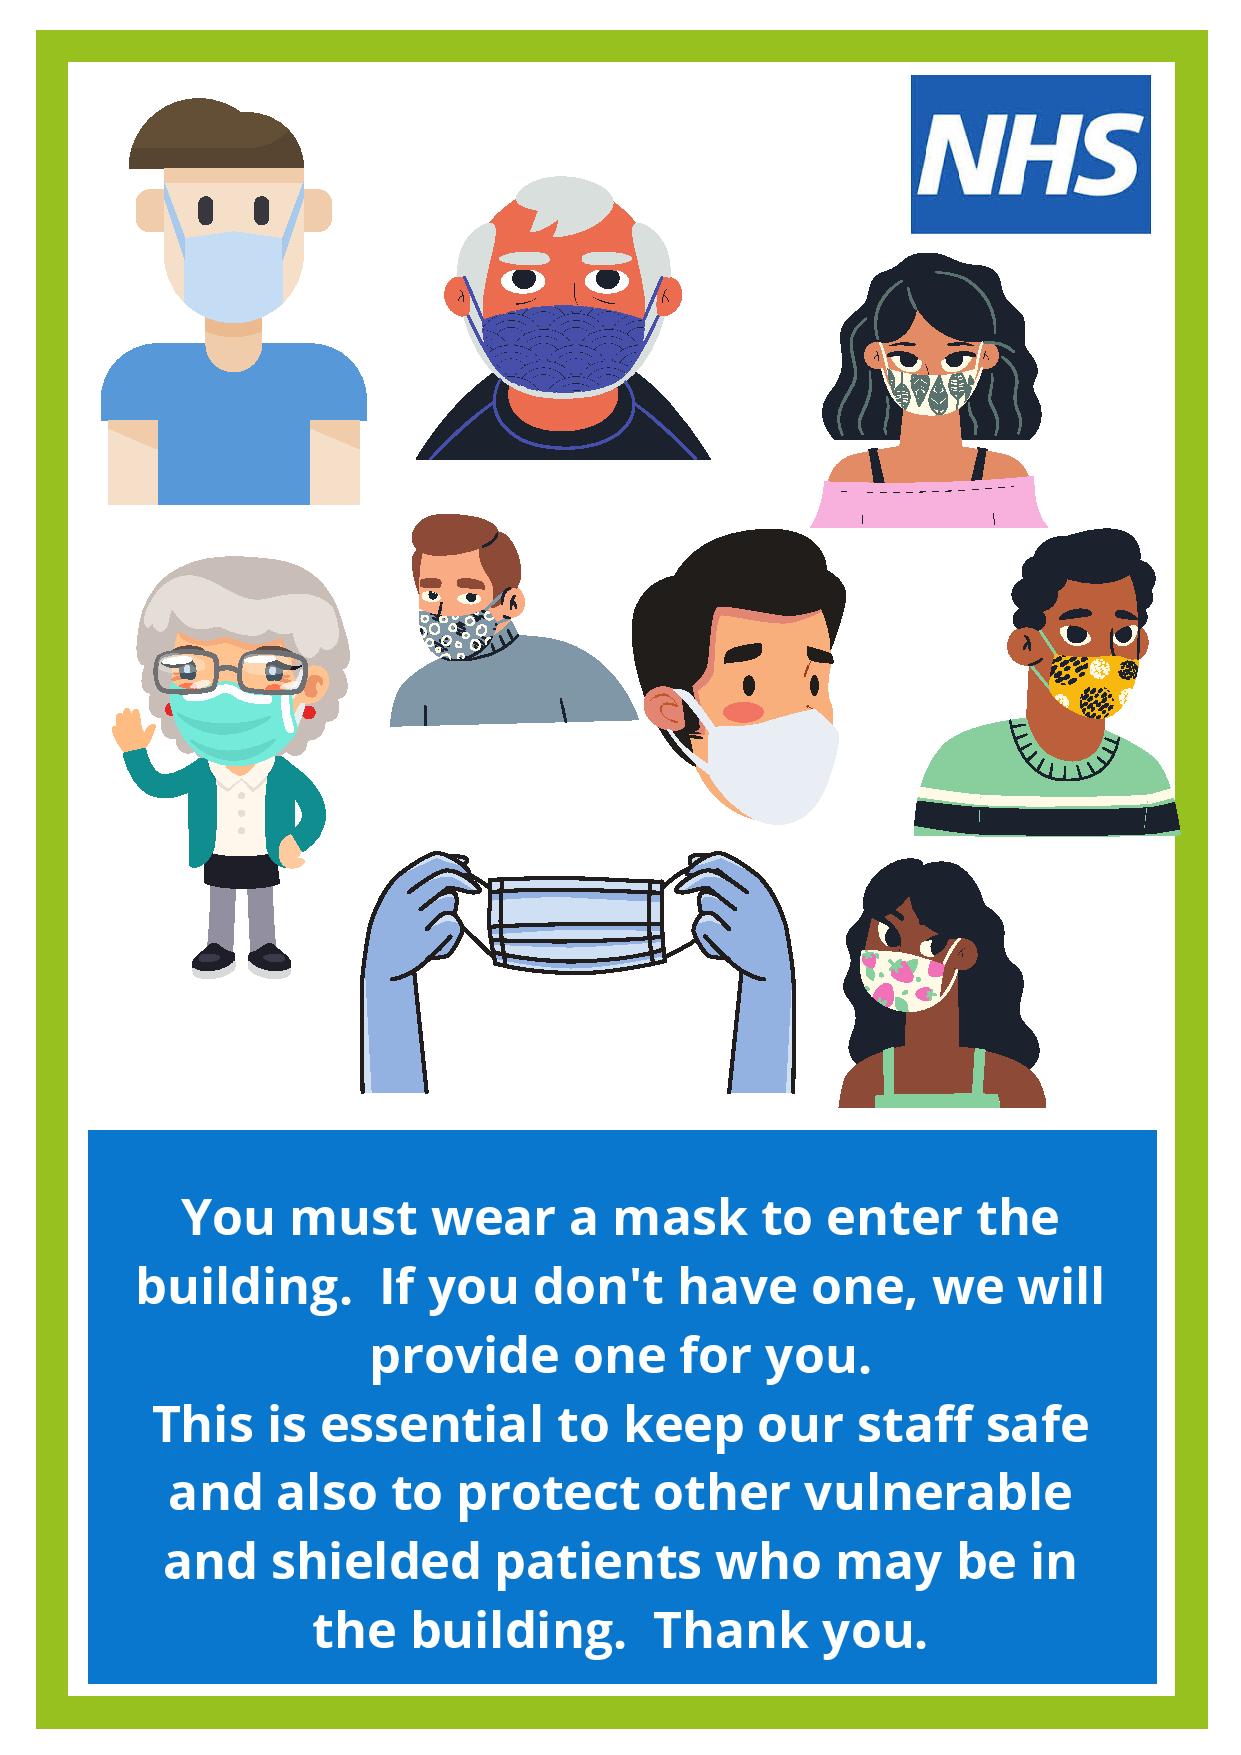 Please wear a face mask